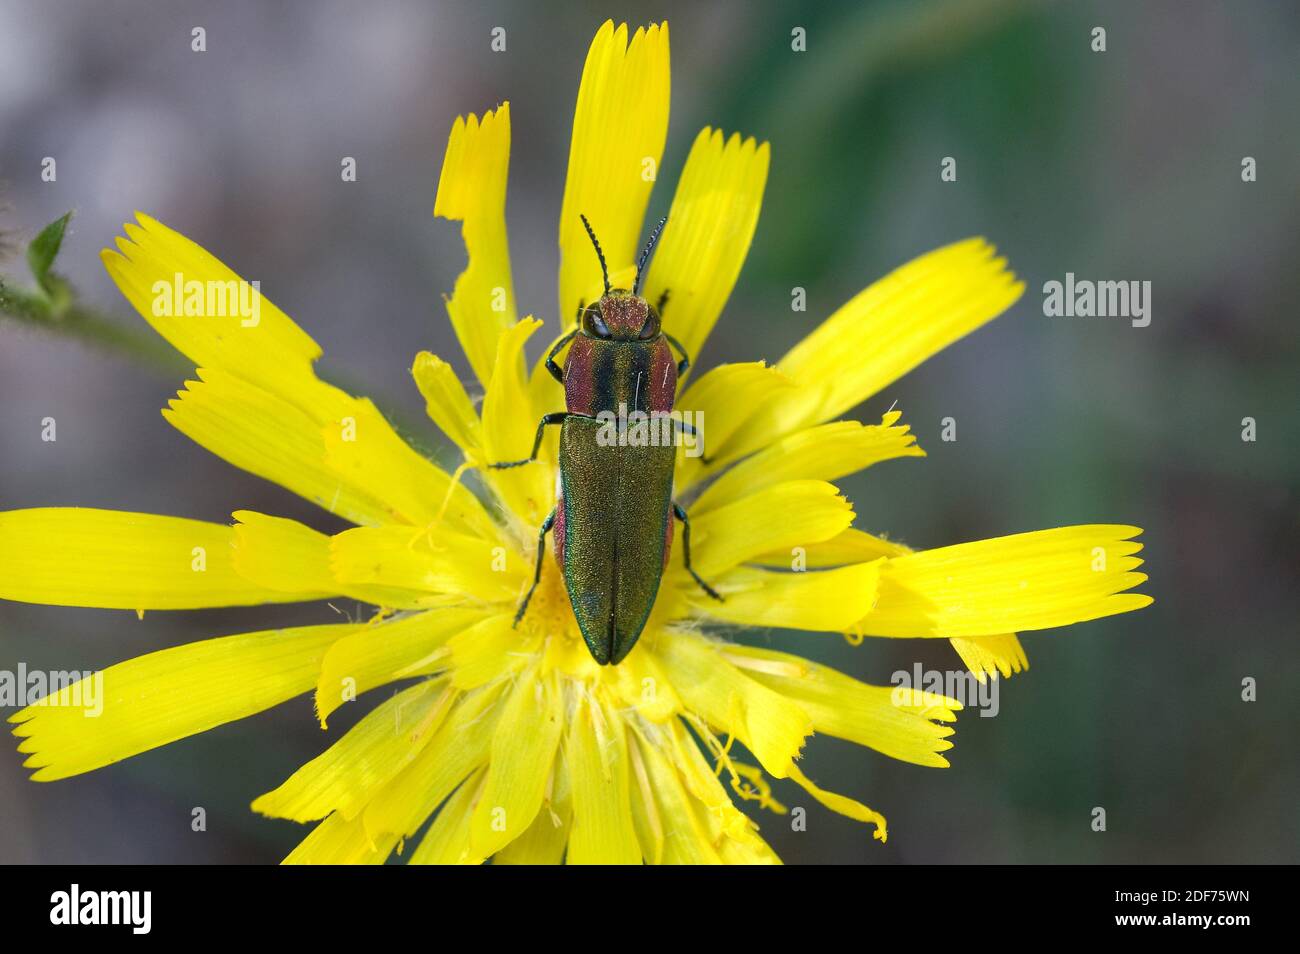 Anthaxia hungarica es un escarabajo polifago nativo de Europa. Esta foto fue tomada en la montaña de Montserrat, provincia de Barcelona, Cataluña, España. Foto de stock